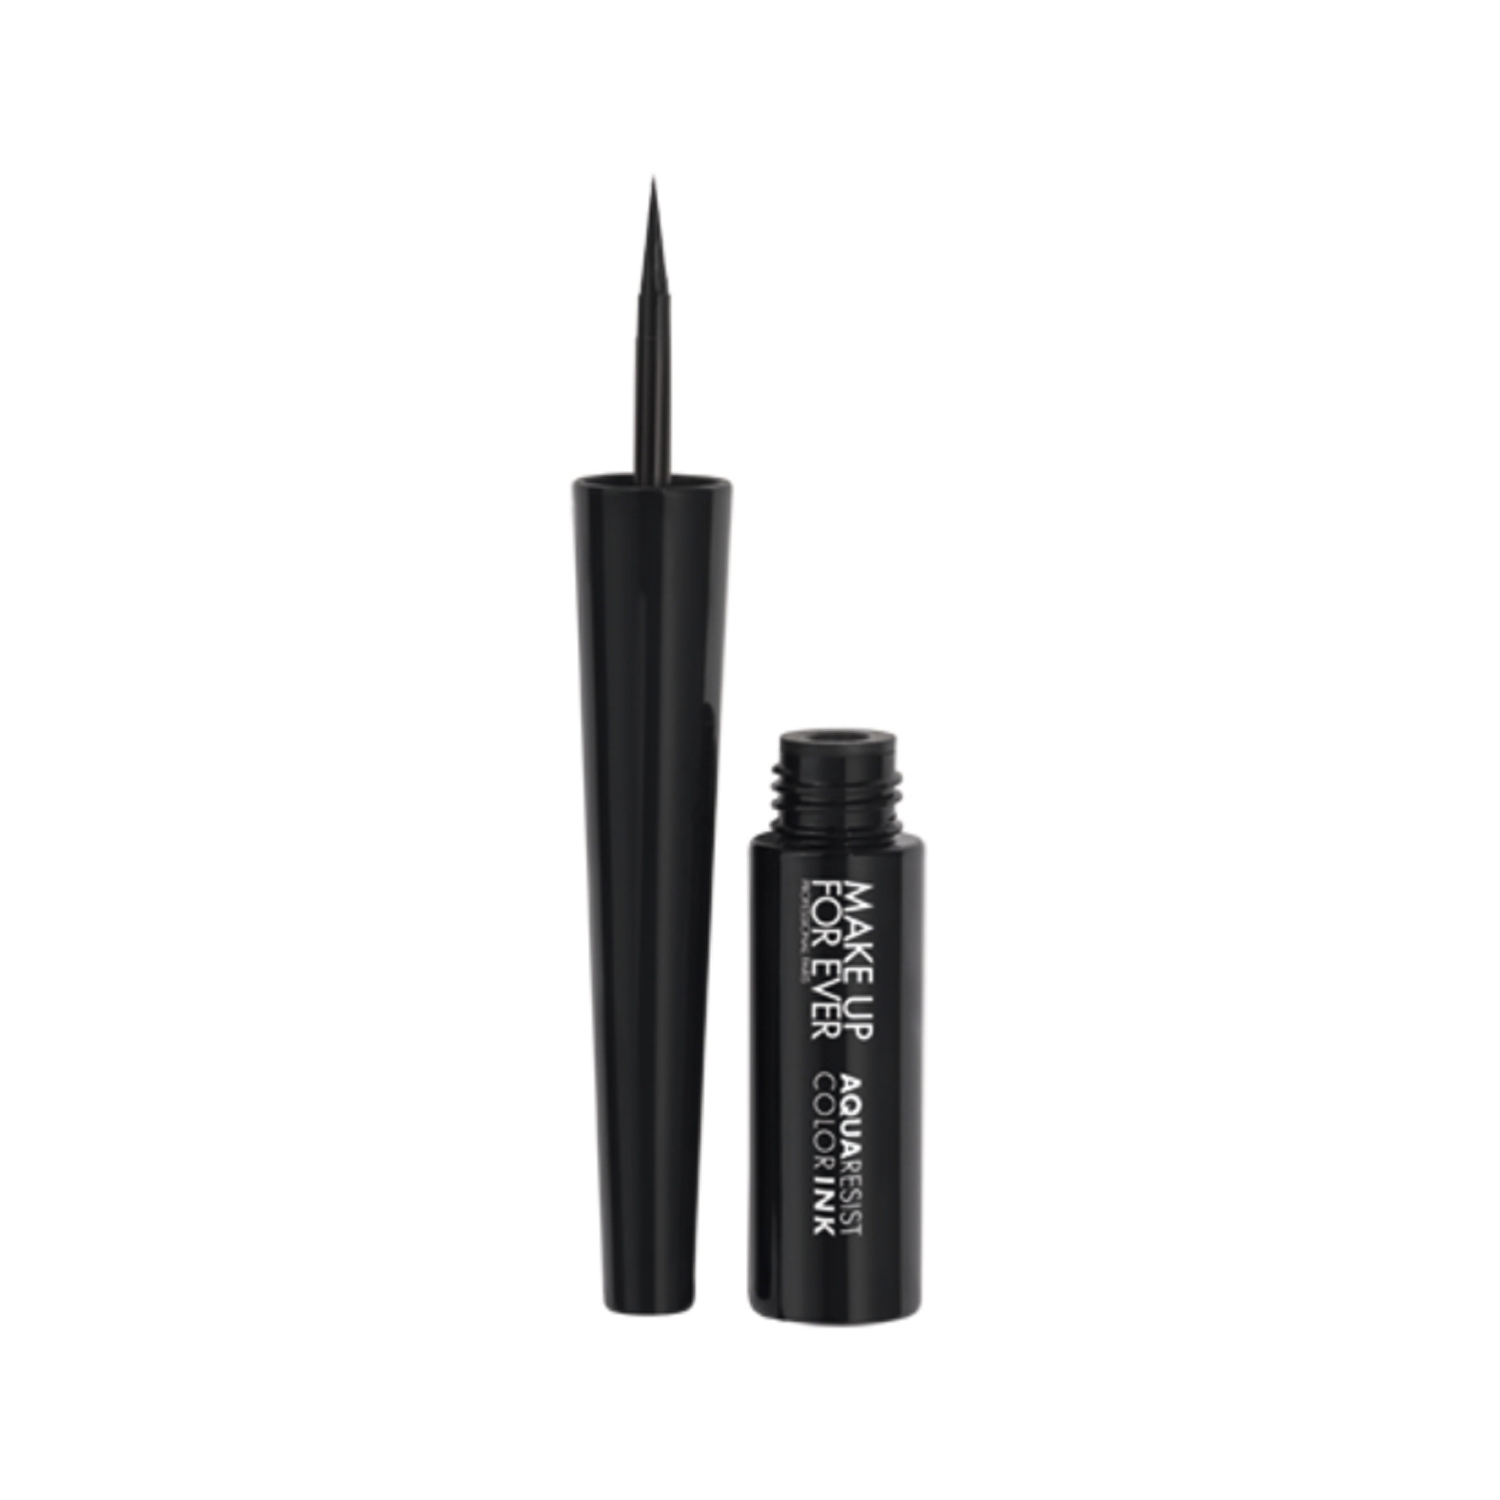 Make Up For Ever | Make Up For Ever Aqua Resist Color Ink Liquid Eyeliner- Matte Charcoal  01 (2ml)